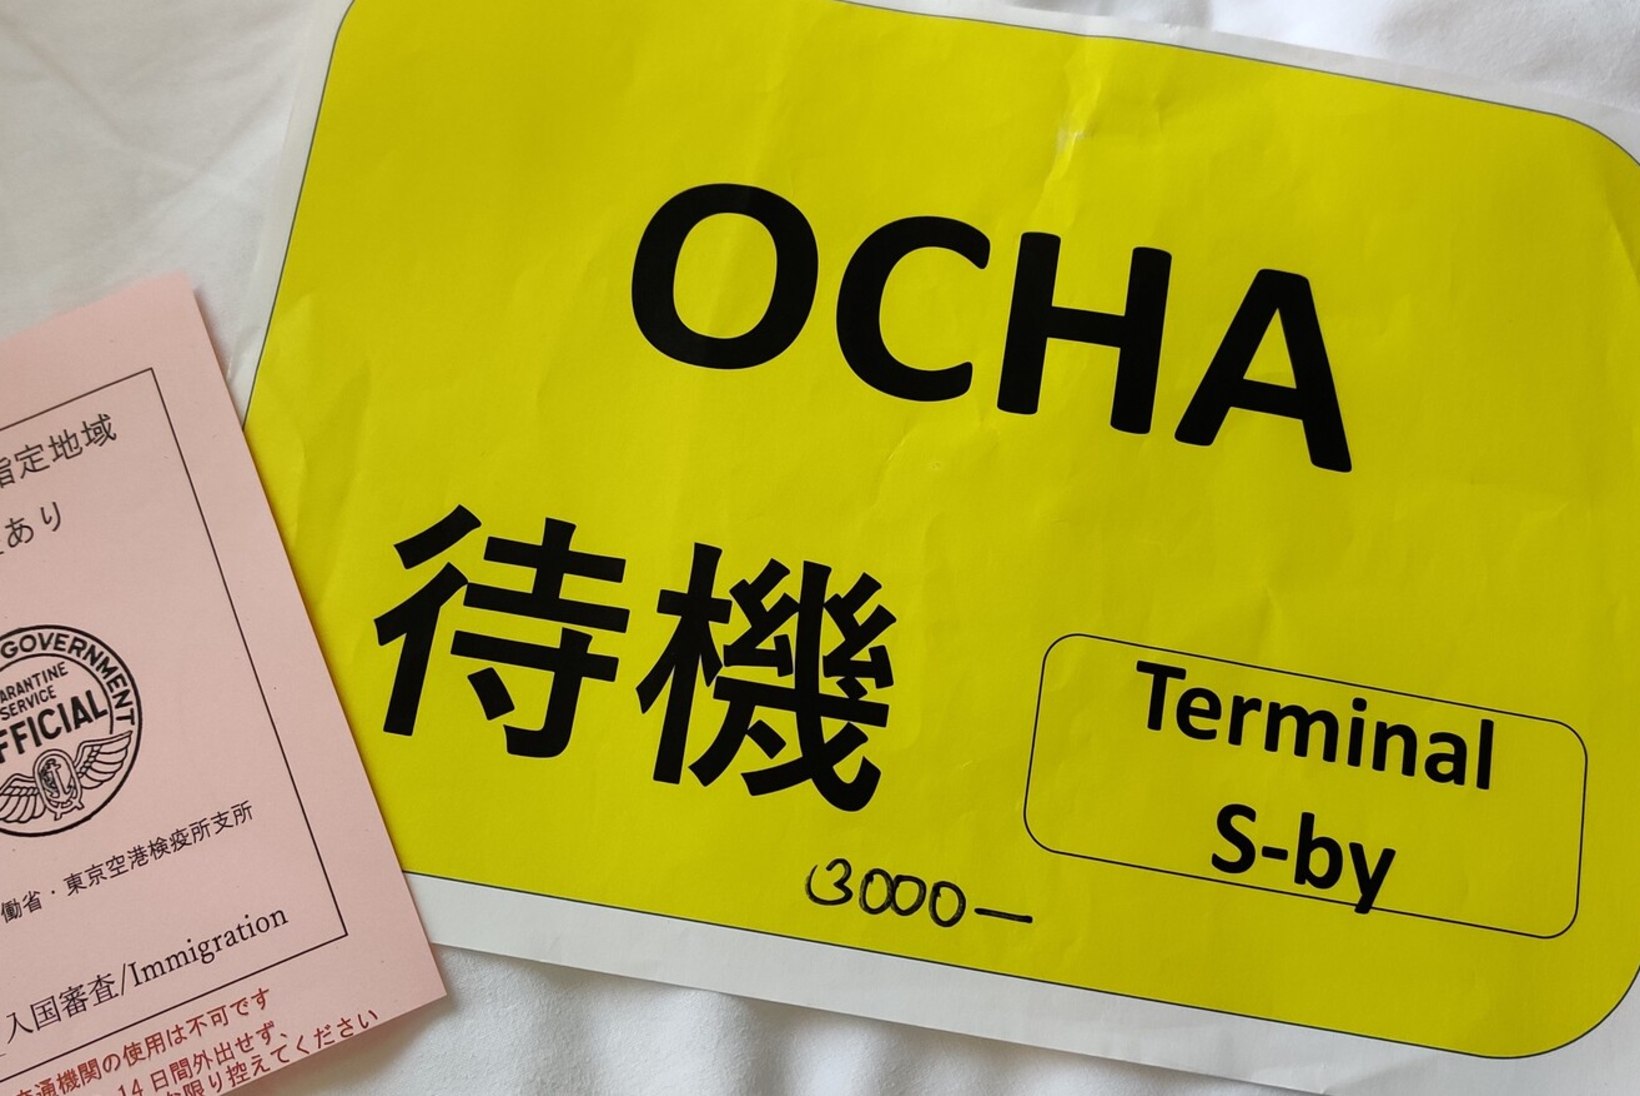 TOKYO PÄEVIK | Maailma kõige olulisem kollane paber, taksodebiilsus ja hädaoht pangaautomaadile liginedes